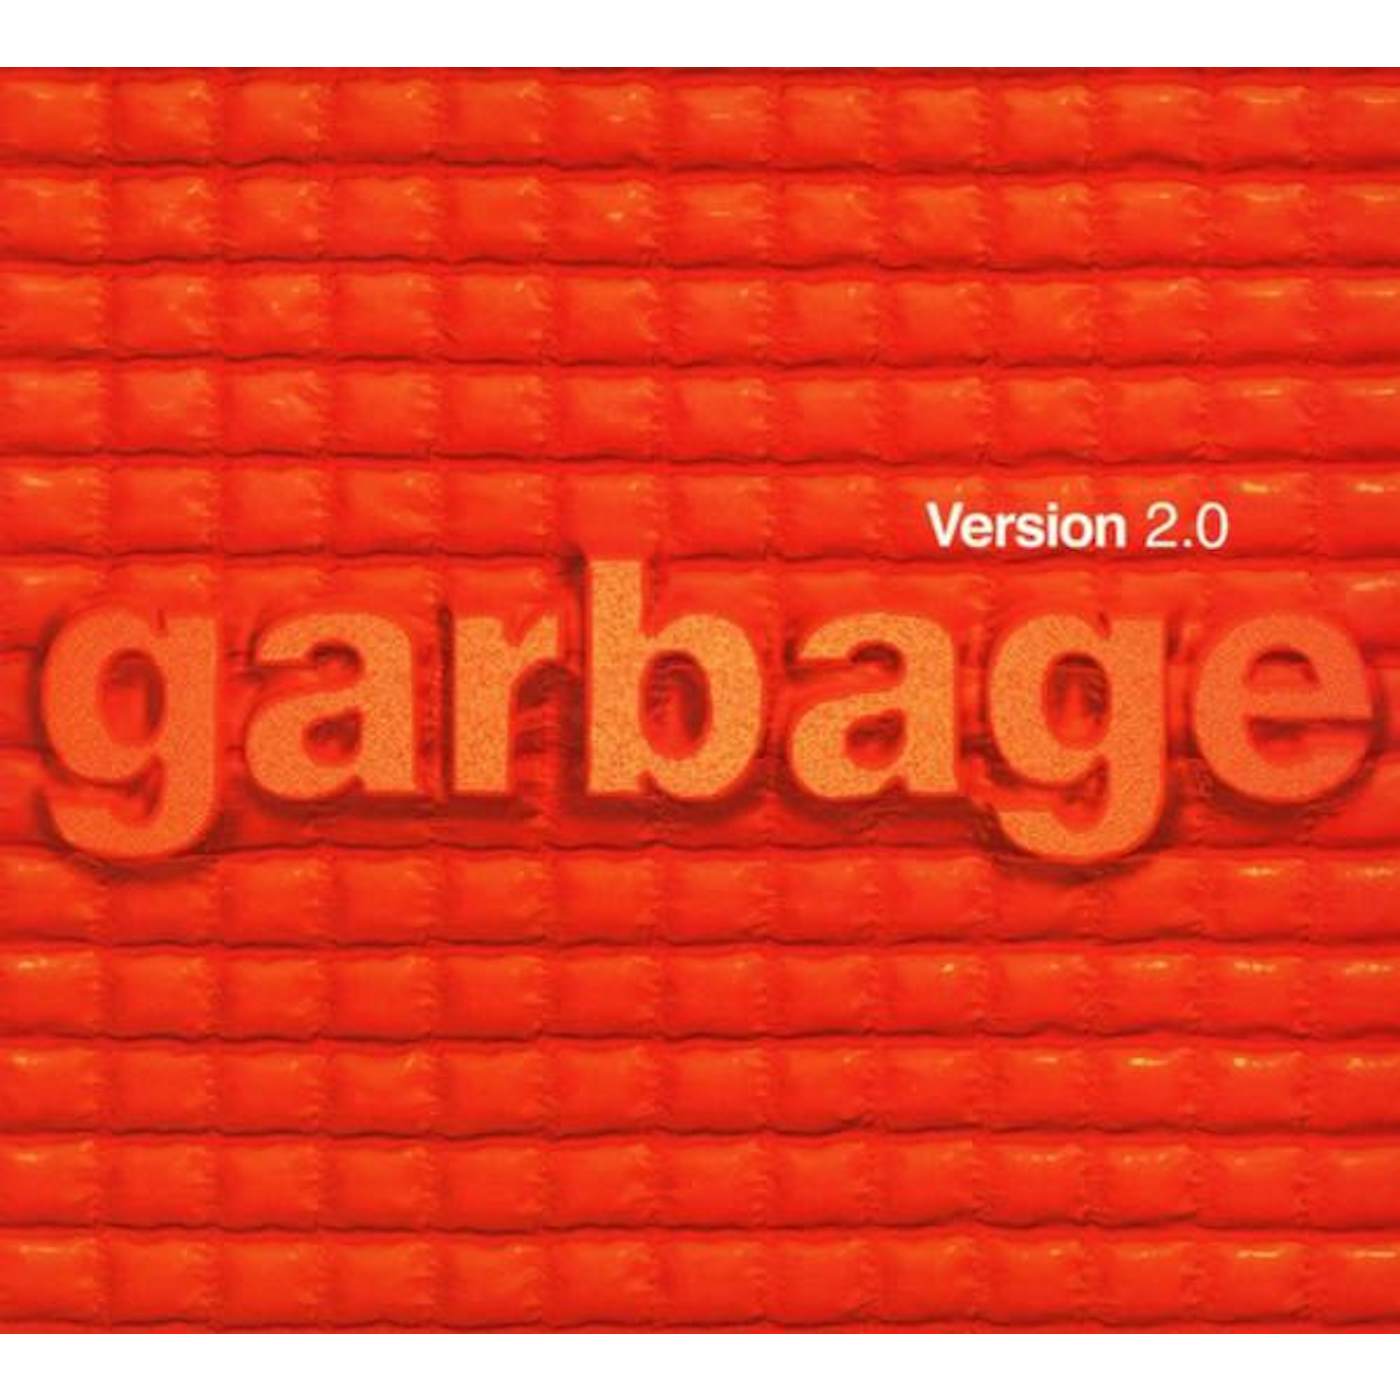 Garbage VERSION 2.0 CD